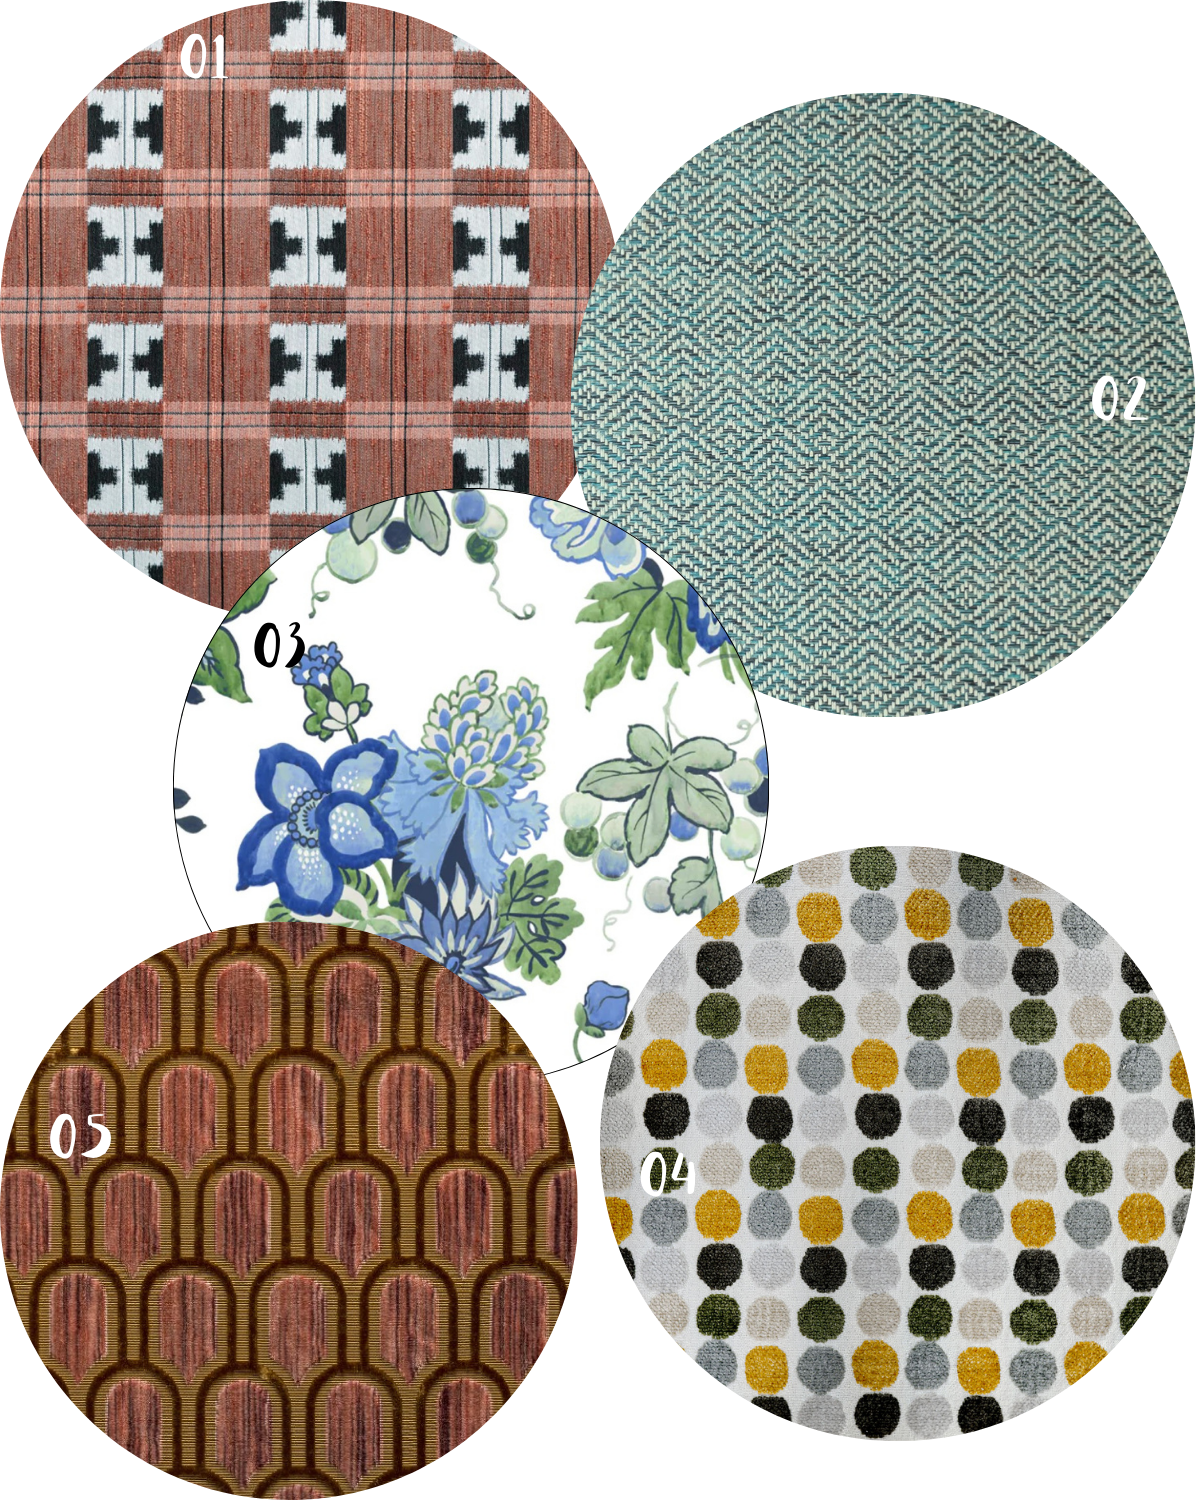 patterns on patterns fabrics